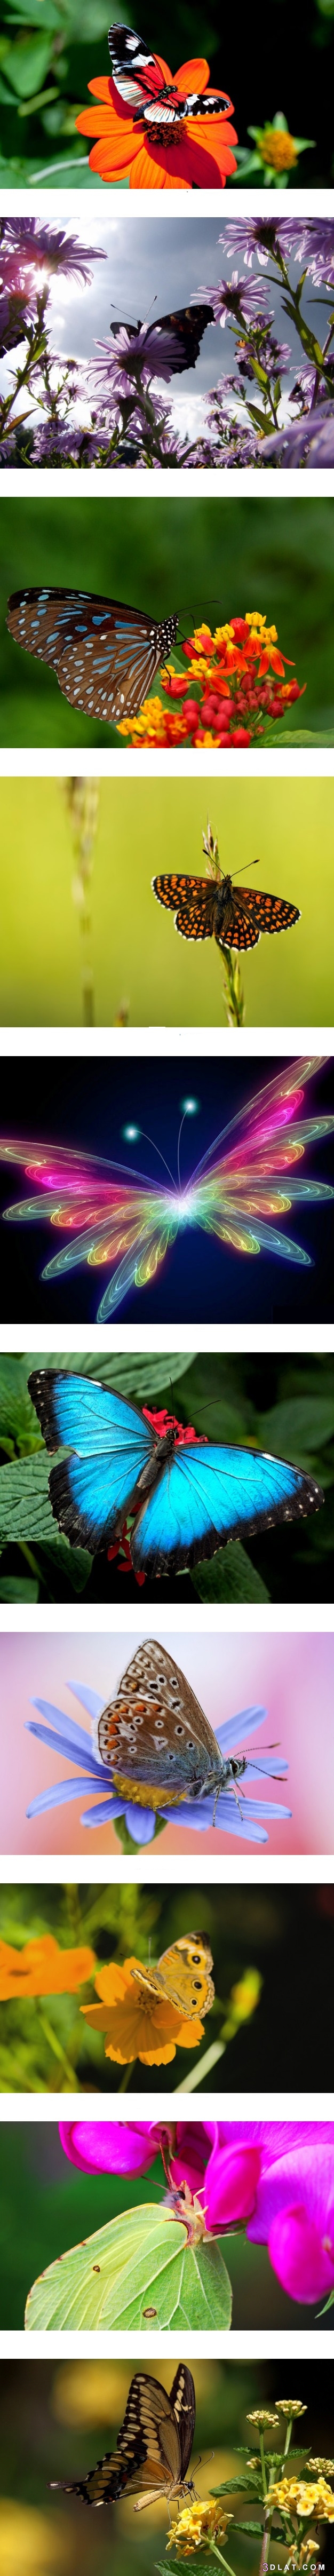 الفراشات وحياتها..صور فراشات بديعة ، فراشات مختلفة الأشكال والألوان